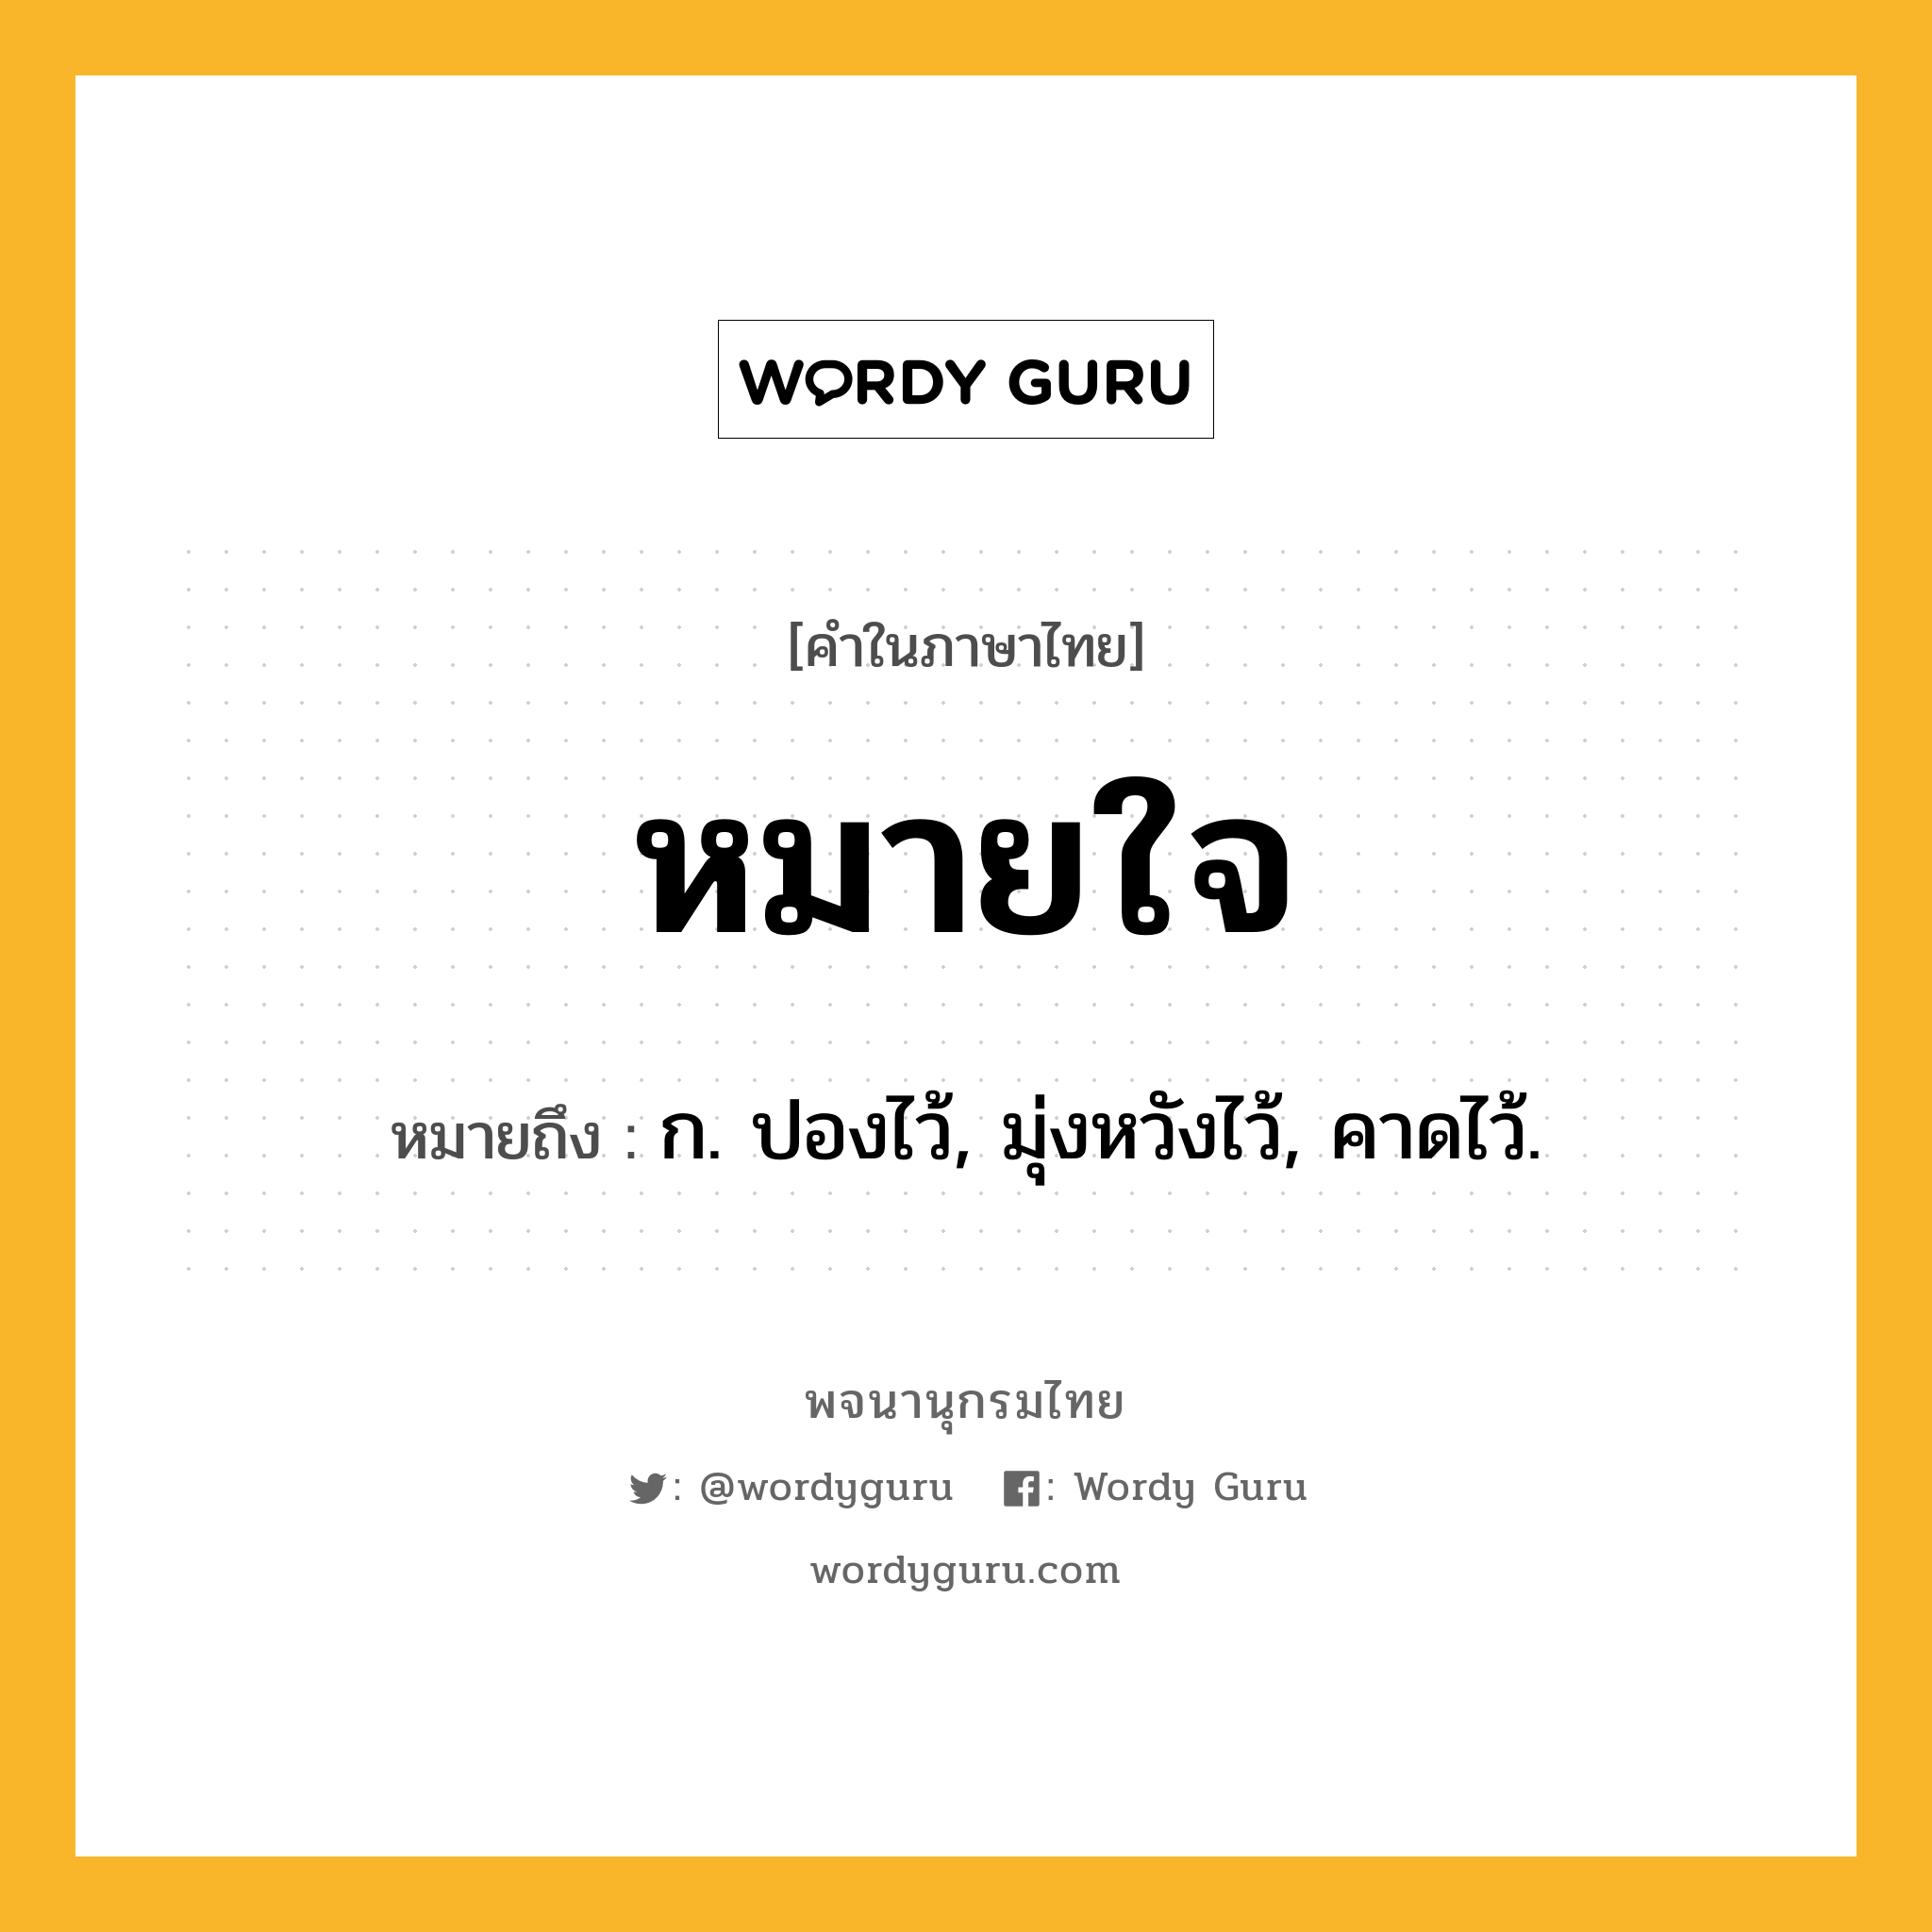 หมายใจ หมายถึงอะไร?, คำในภาษาไทย หมายใจ หมายถึง ก. ปองไว้, มุ่งหวังไว้, คาดไว้.